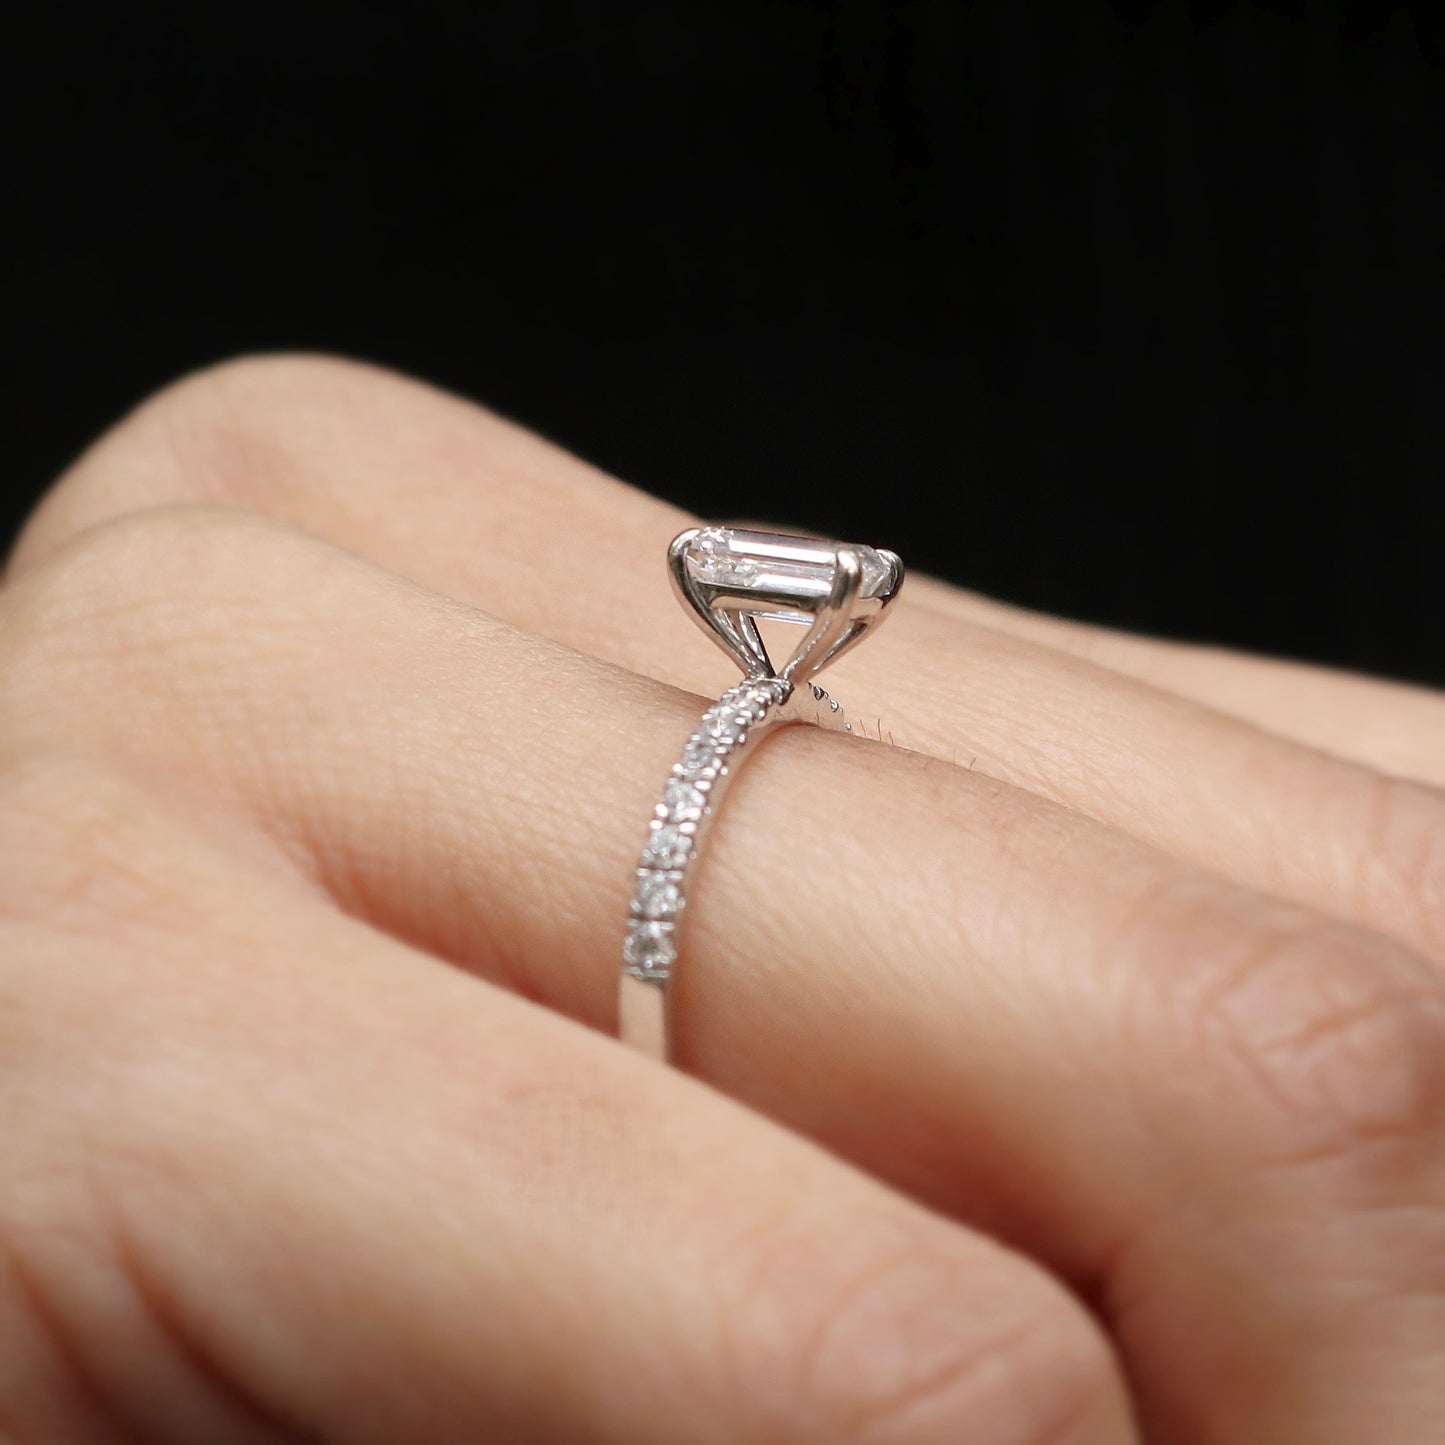 QuantaPulse Lab Grown Diamond Ring - Fiona Diamonds - Fiona Diamonds